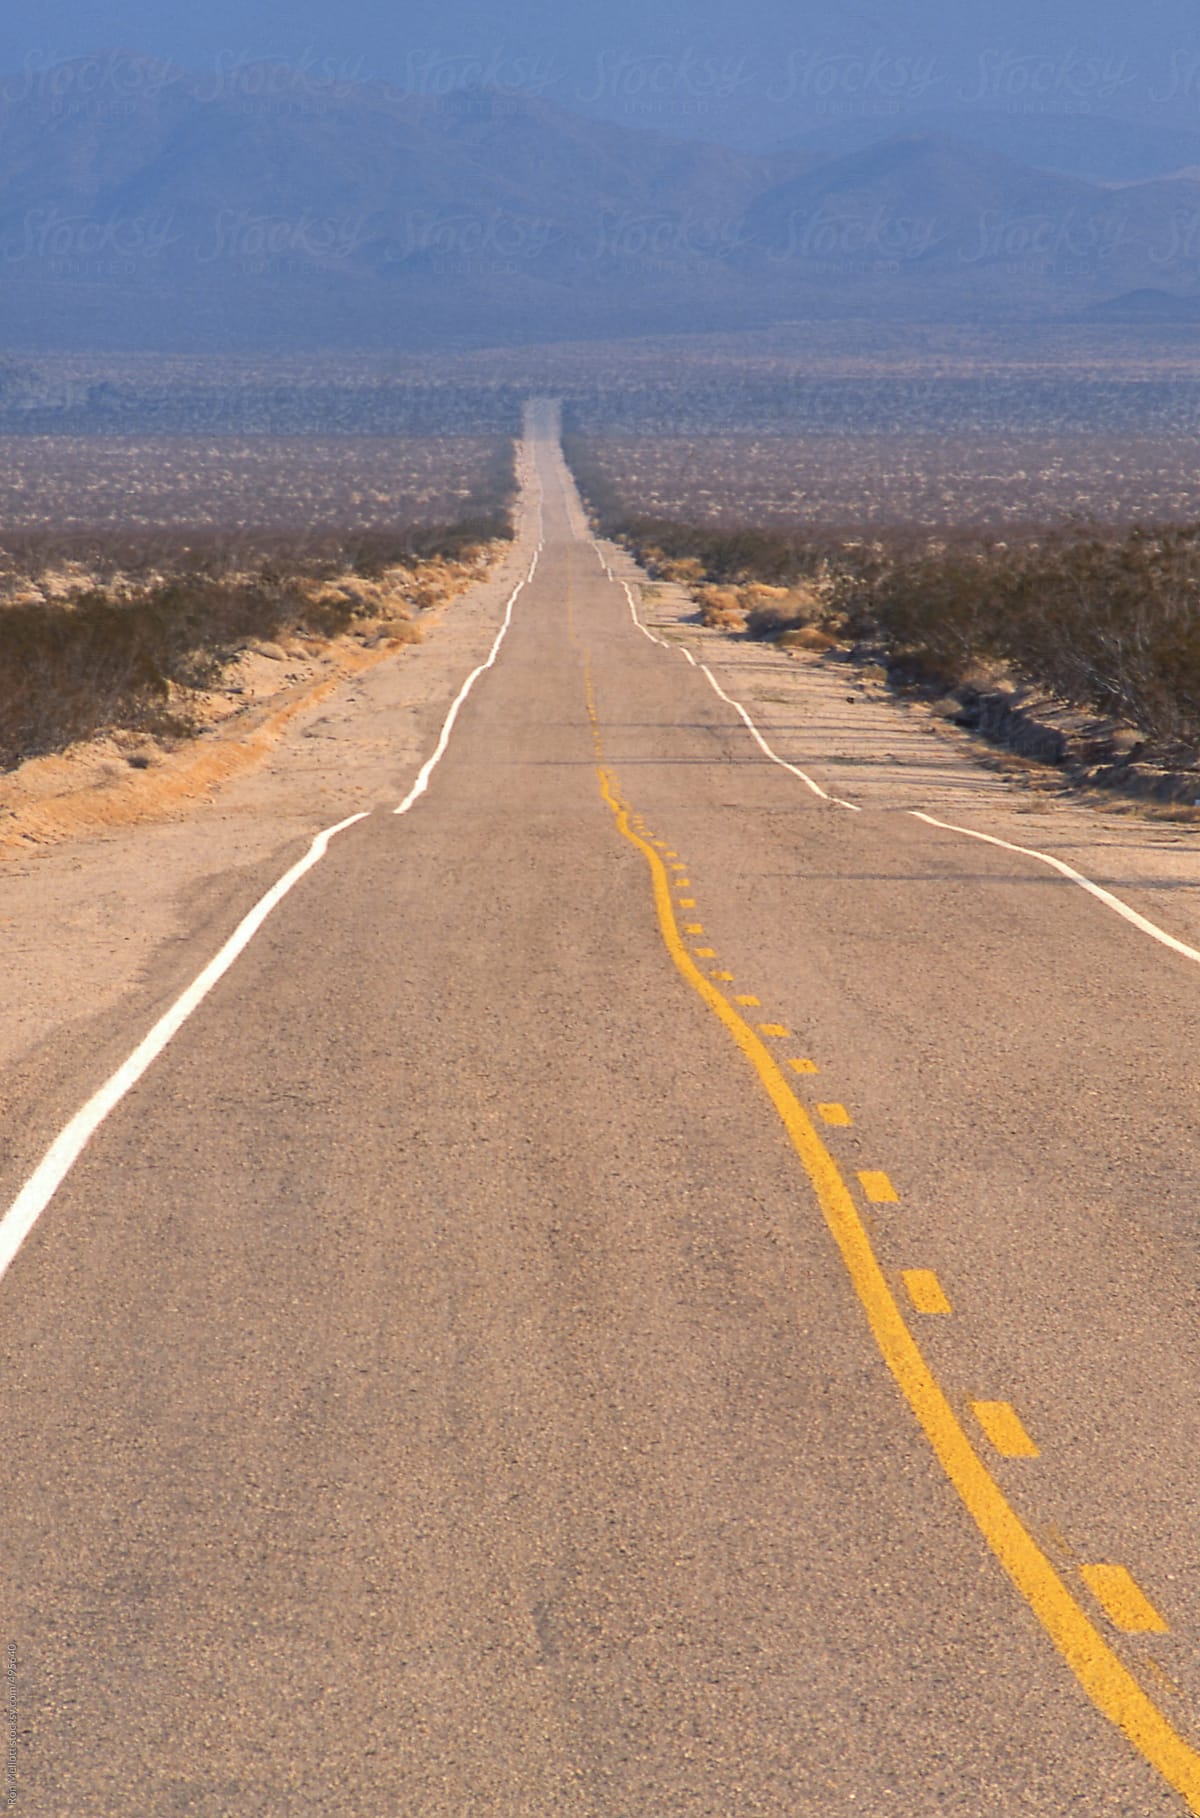 paved asphalt road Mojave desert California two-lane straight shrubs